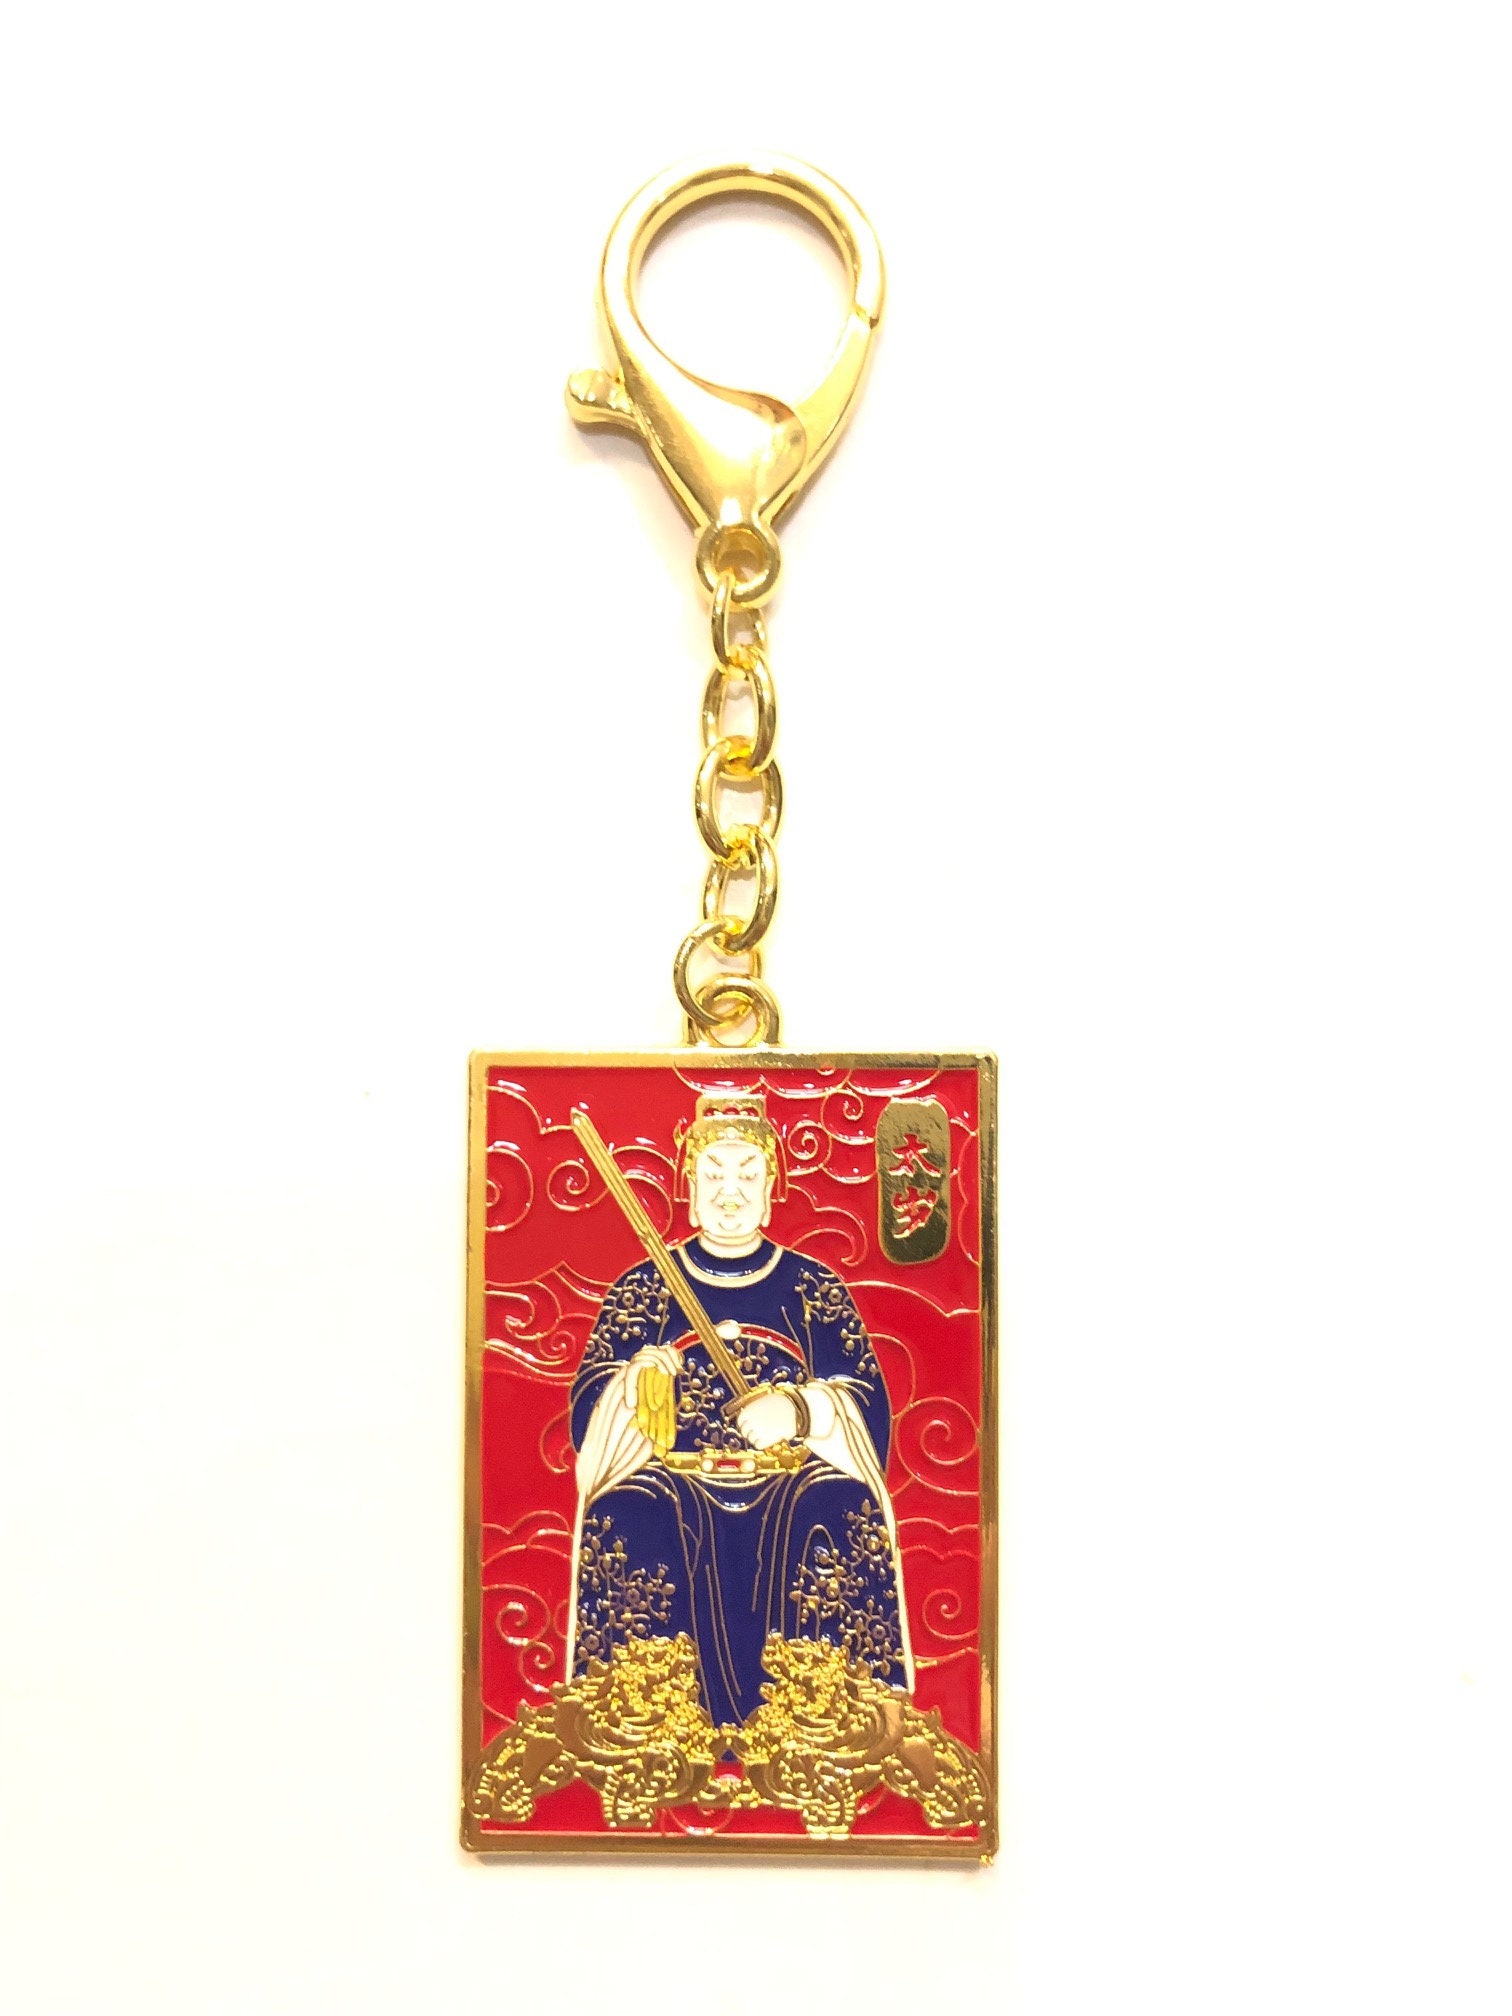 Decorative Cute Potali/Money Bag Feng Shui Talisman Gift Pendant Amule